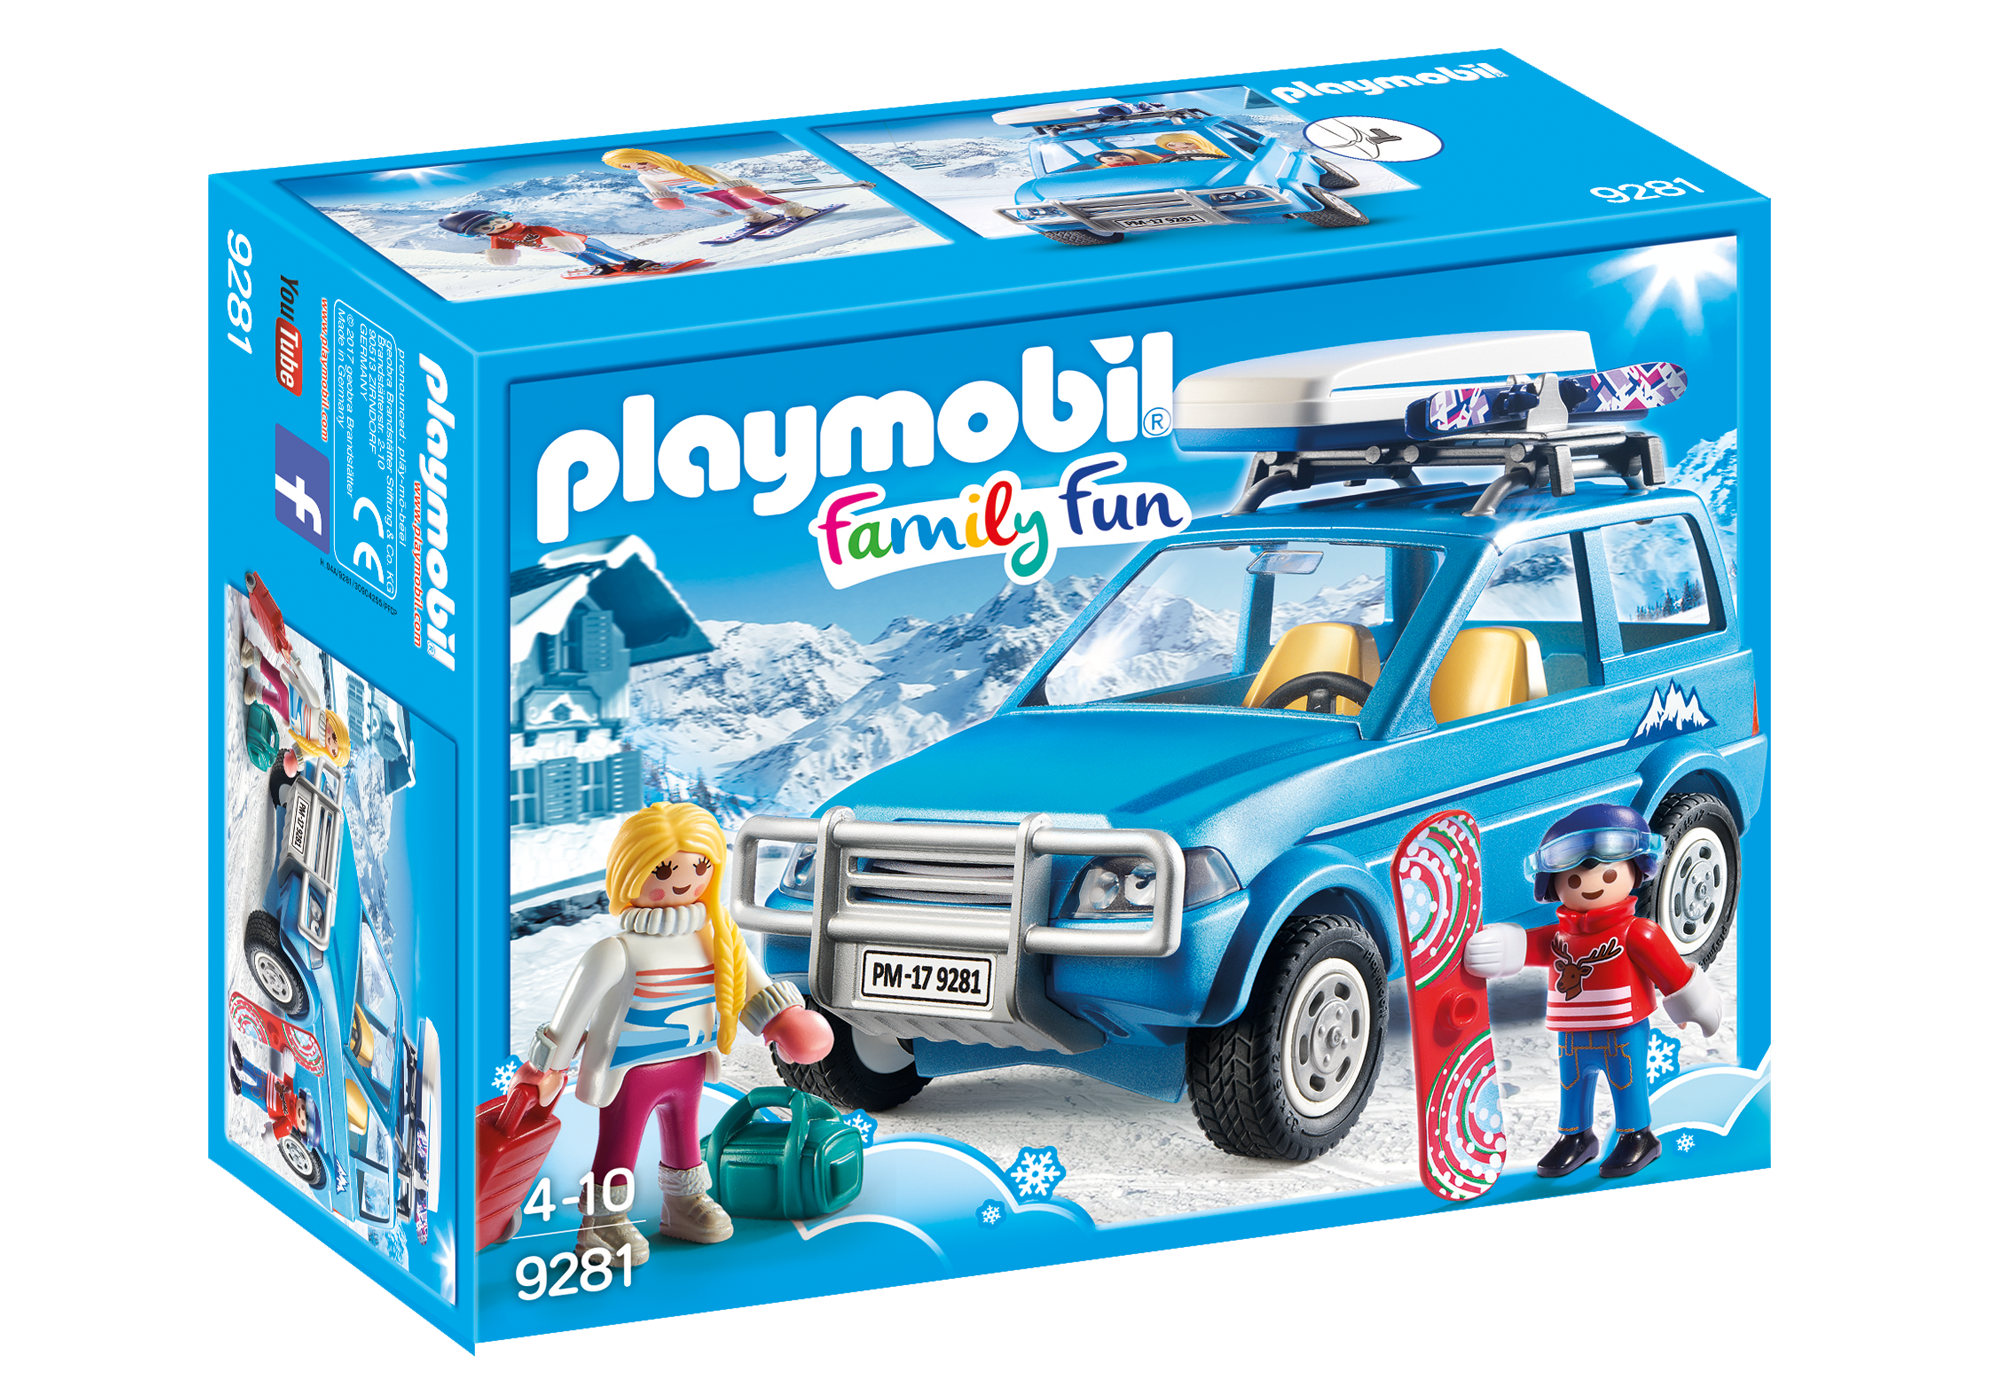 9281 playmobil